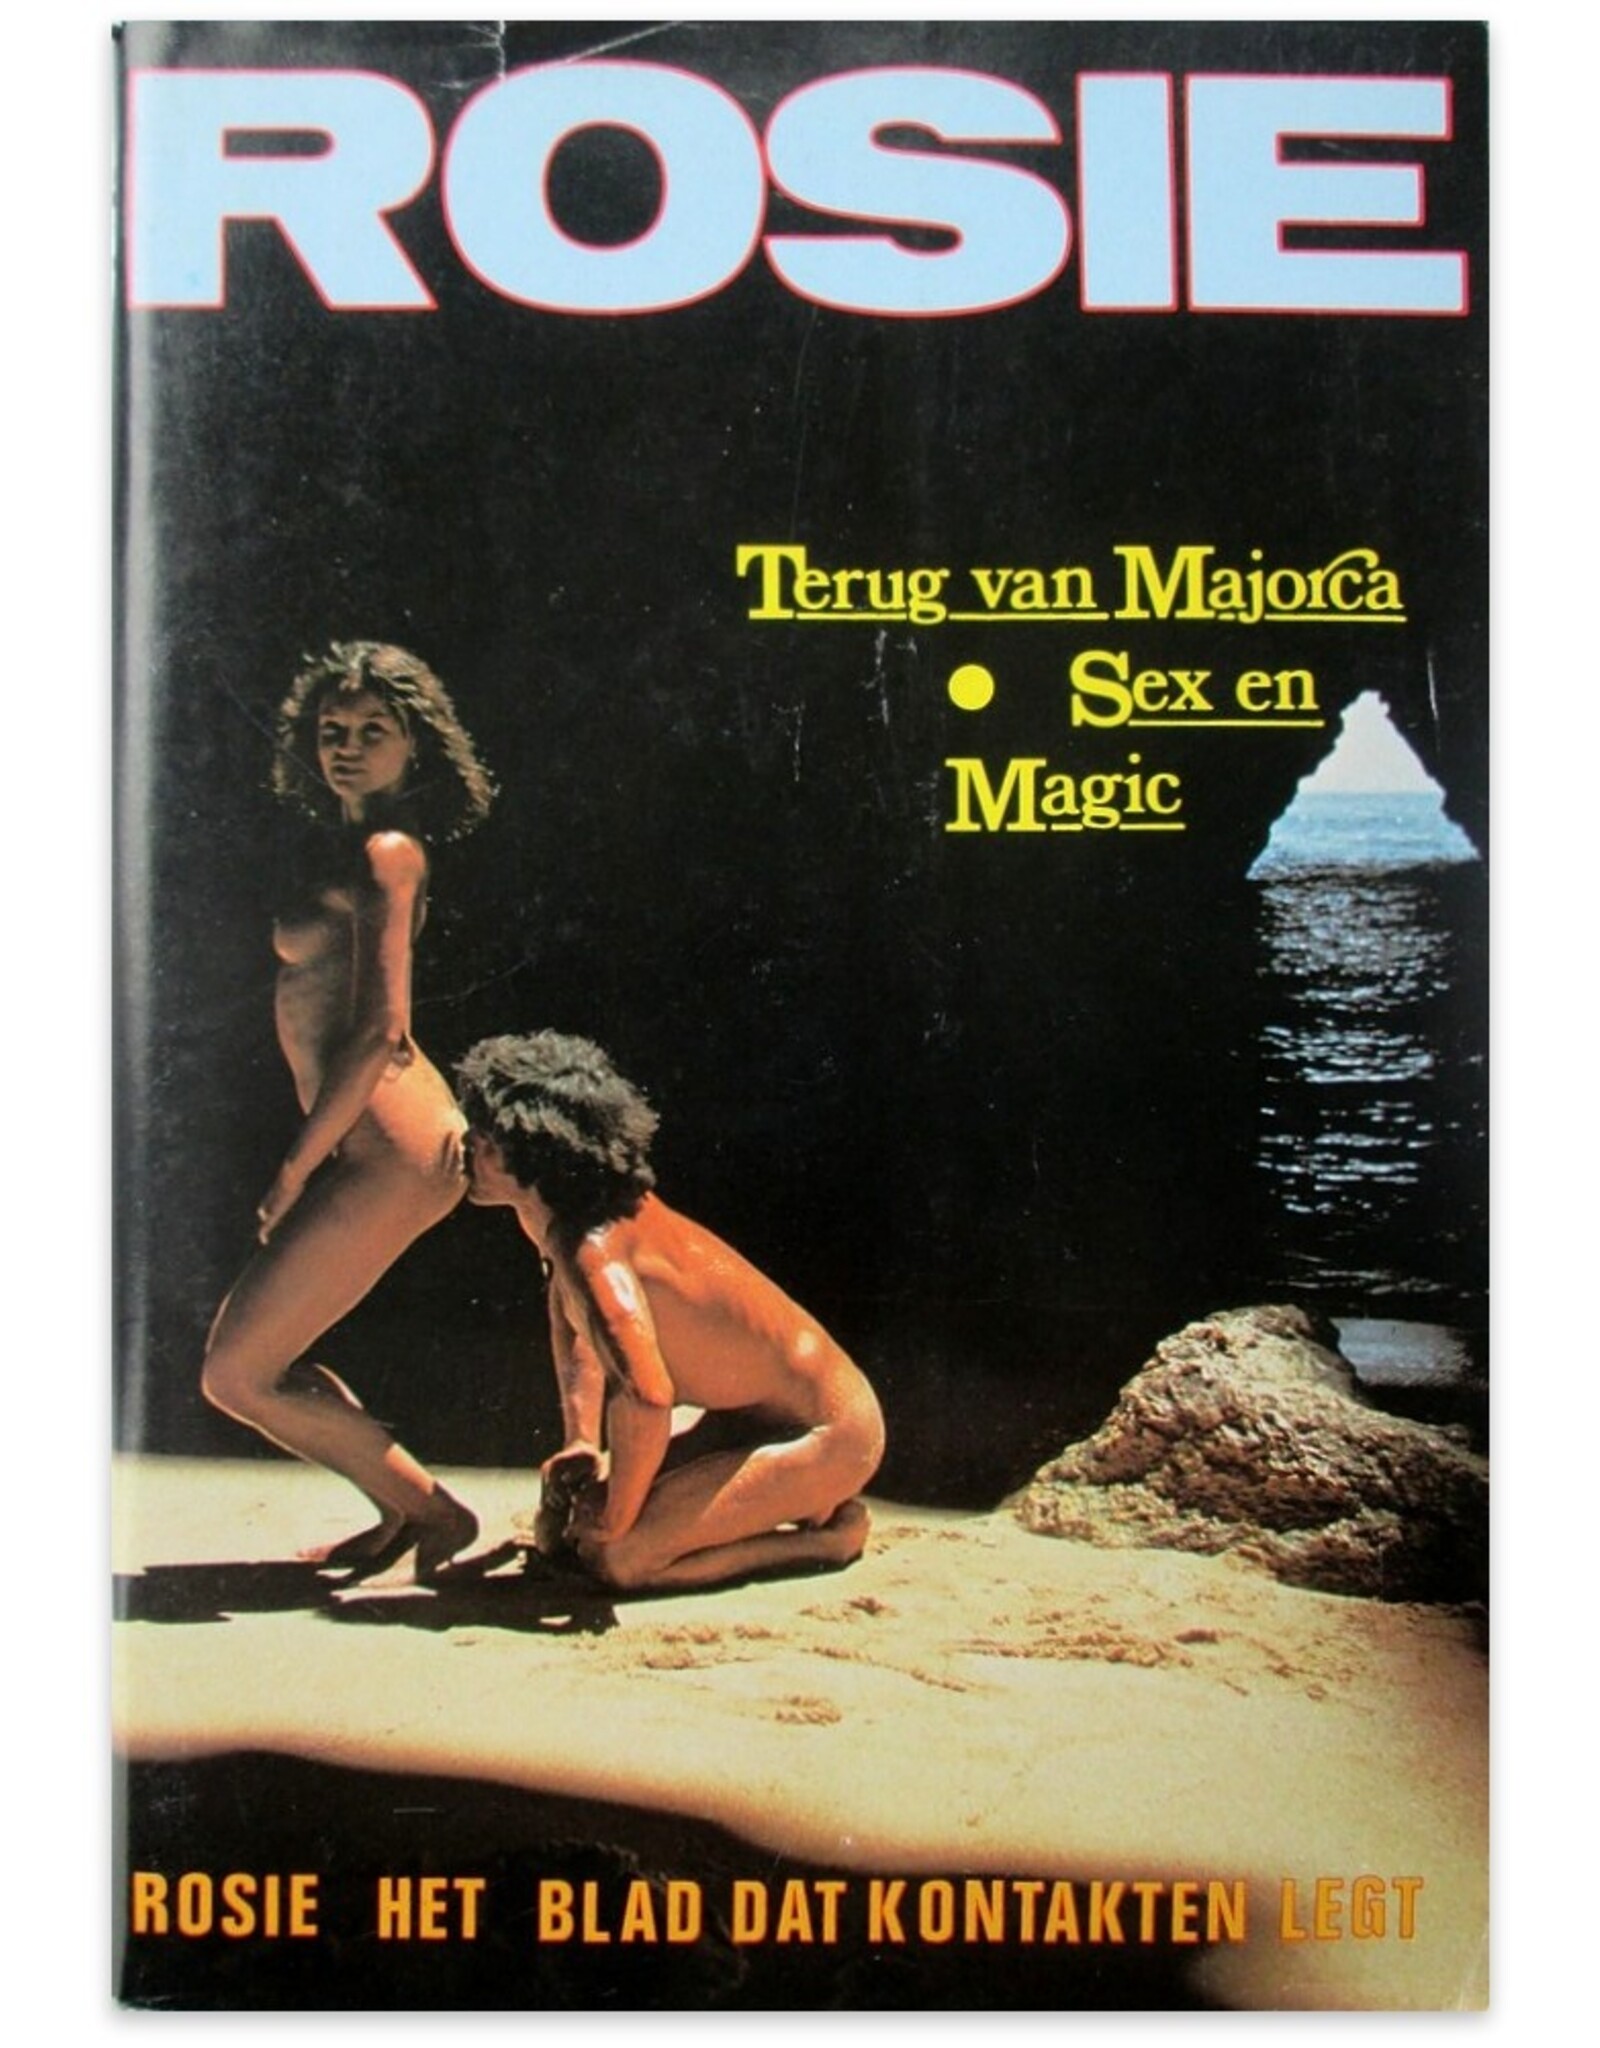 Joop Hoek [ed.] - Rosie nummer 107 - 9e Jaargang. Het blad dat kontakten legt: Sex en Magie